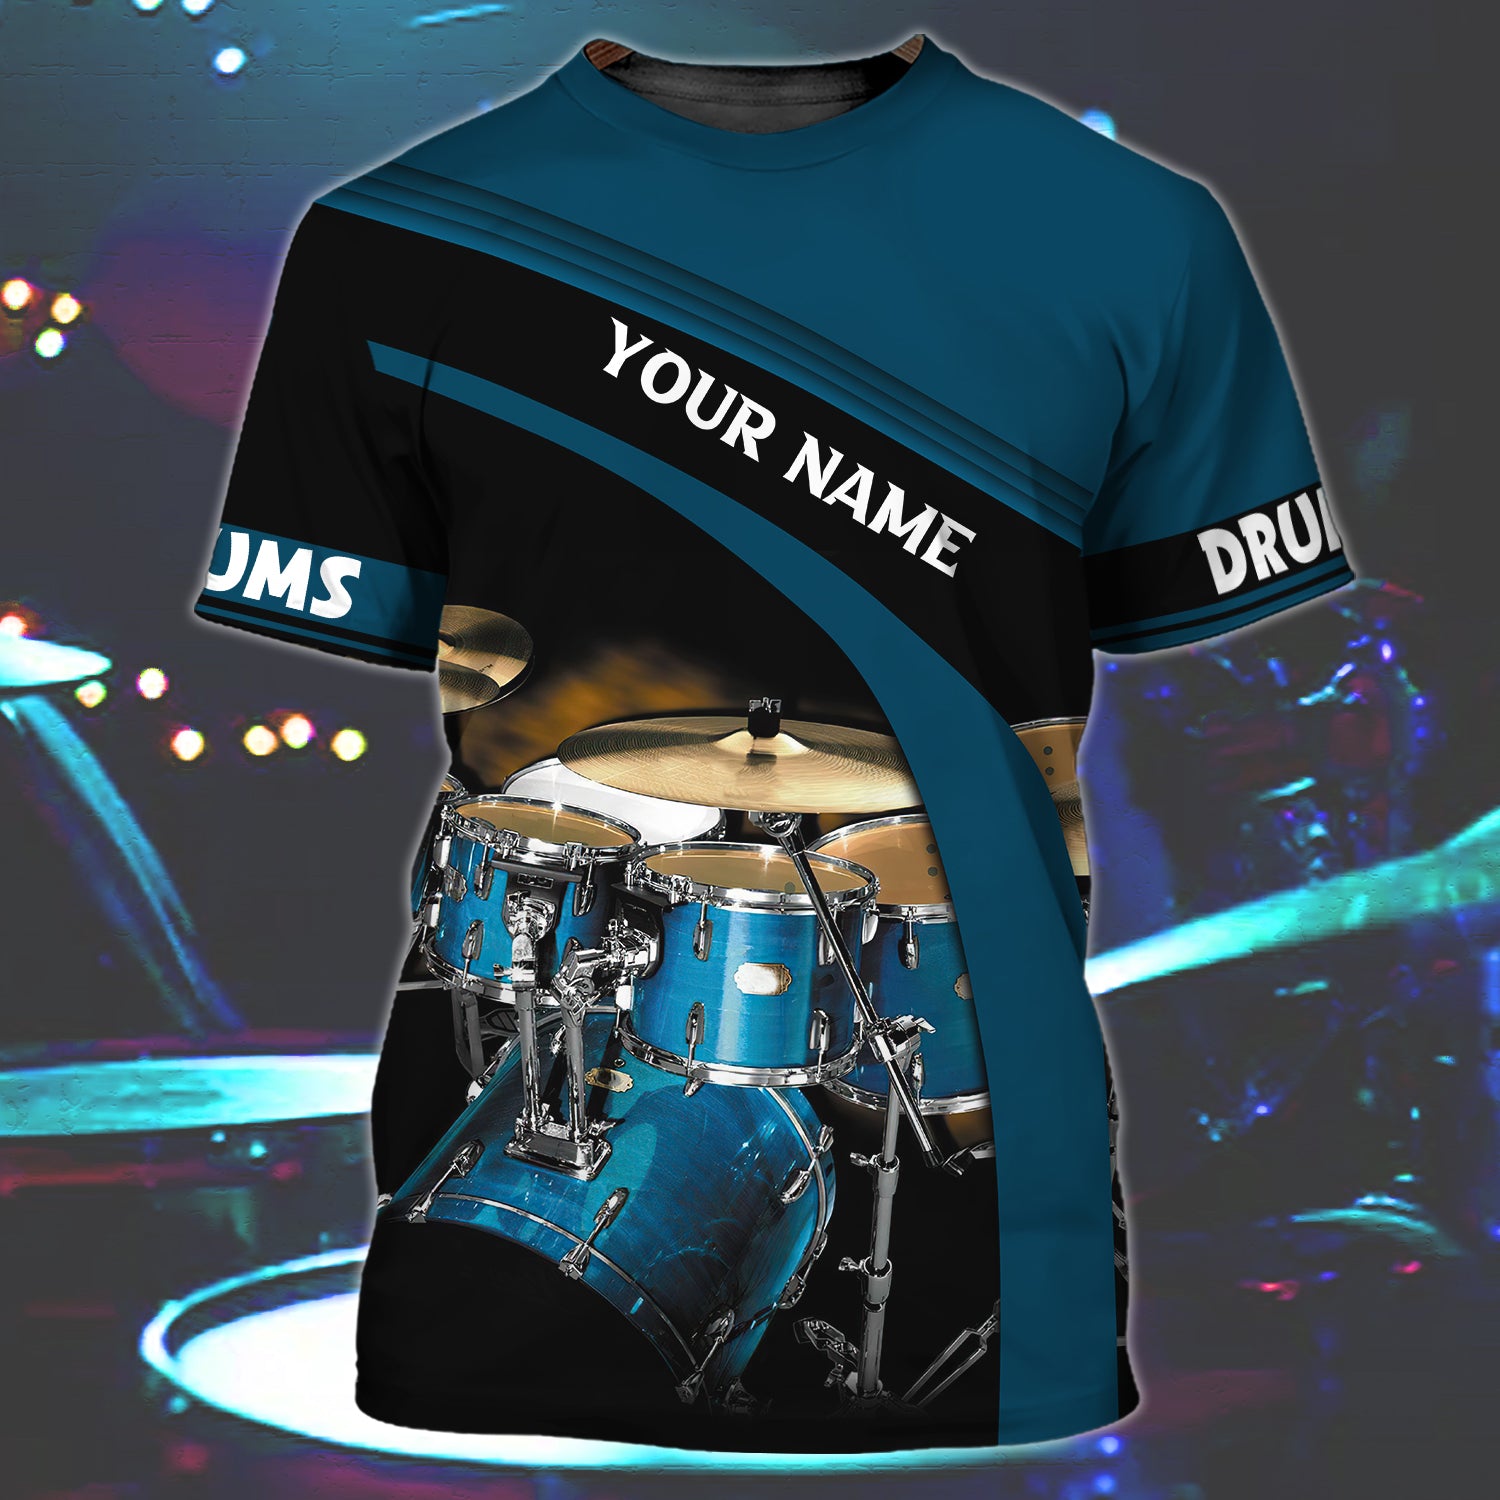 DRUM - Personalized Name 3D Tshirt 06 - RINC98